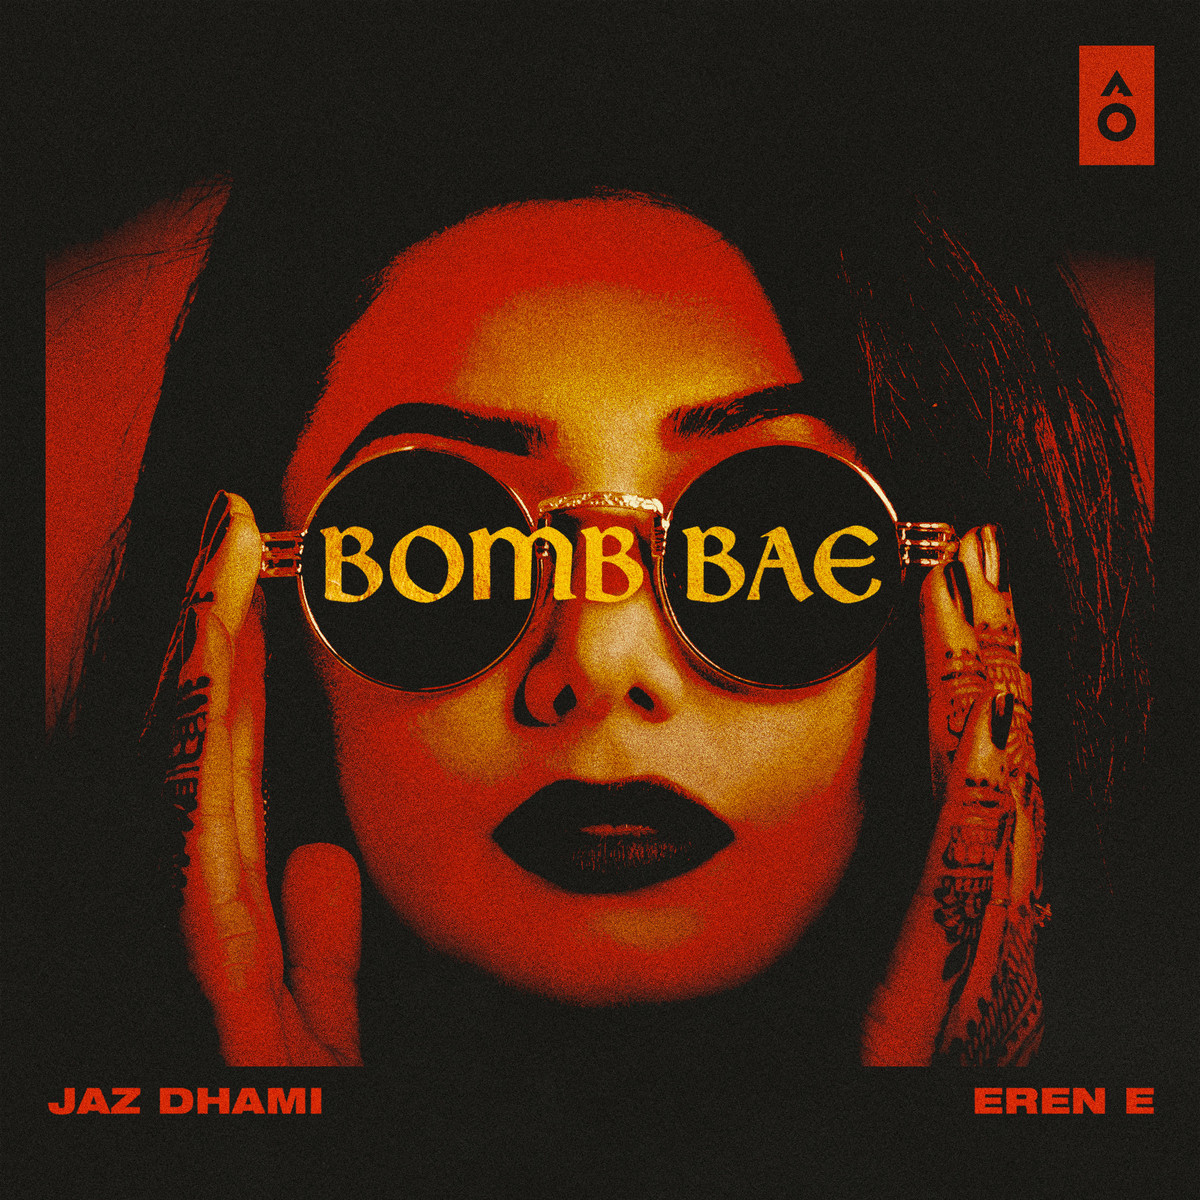 Bomb Bae Lyrics In Punjabi Bomb Bae Single Bomb Bae Song Lyrics In English Free Online On Gaana Com